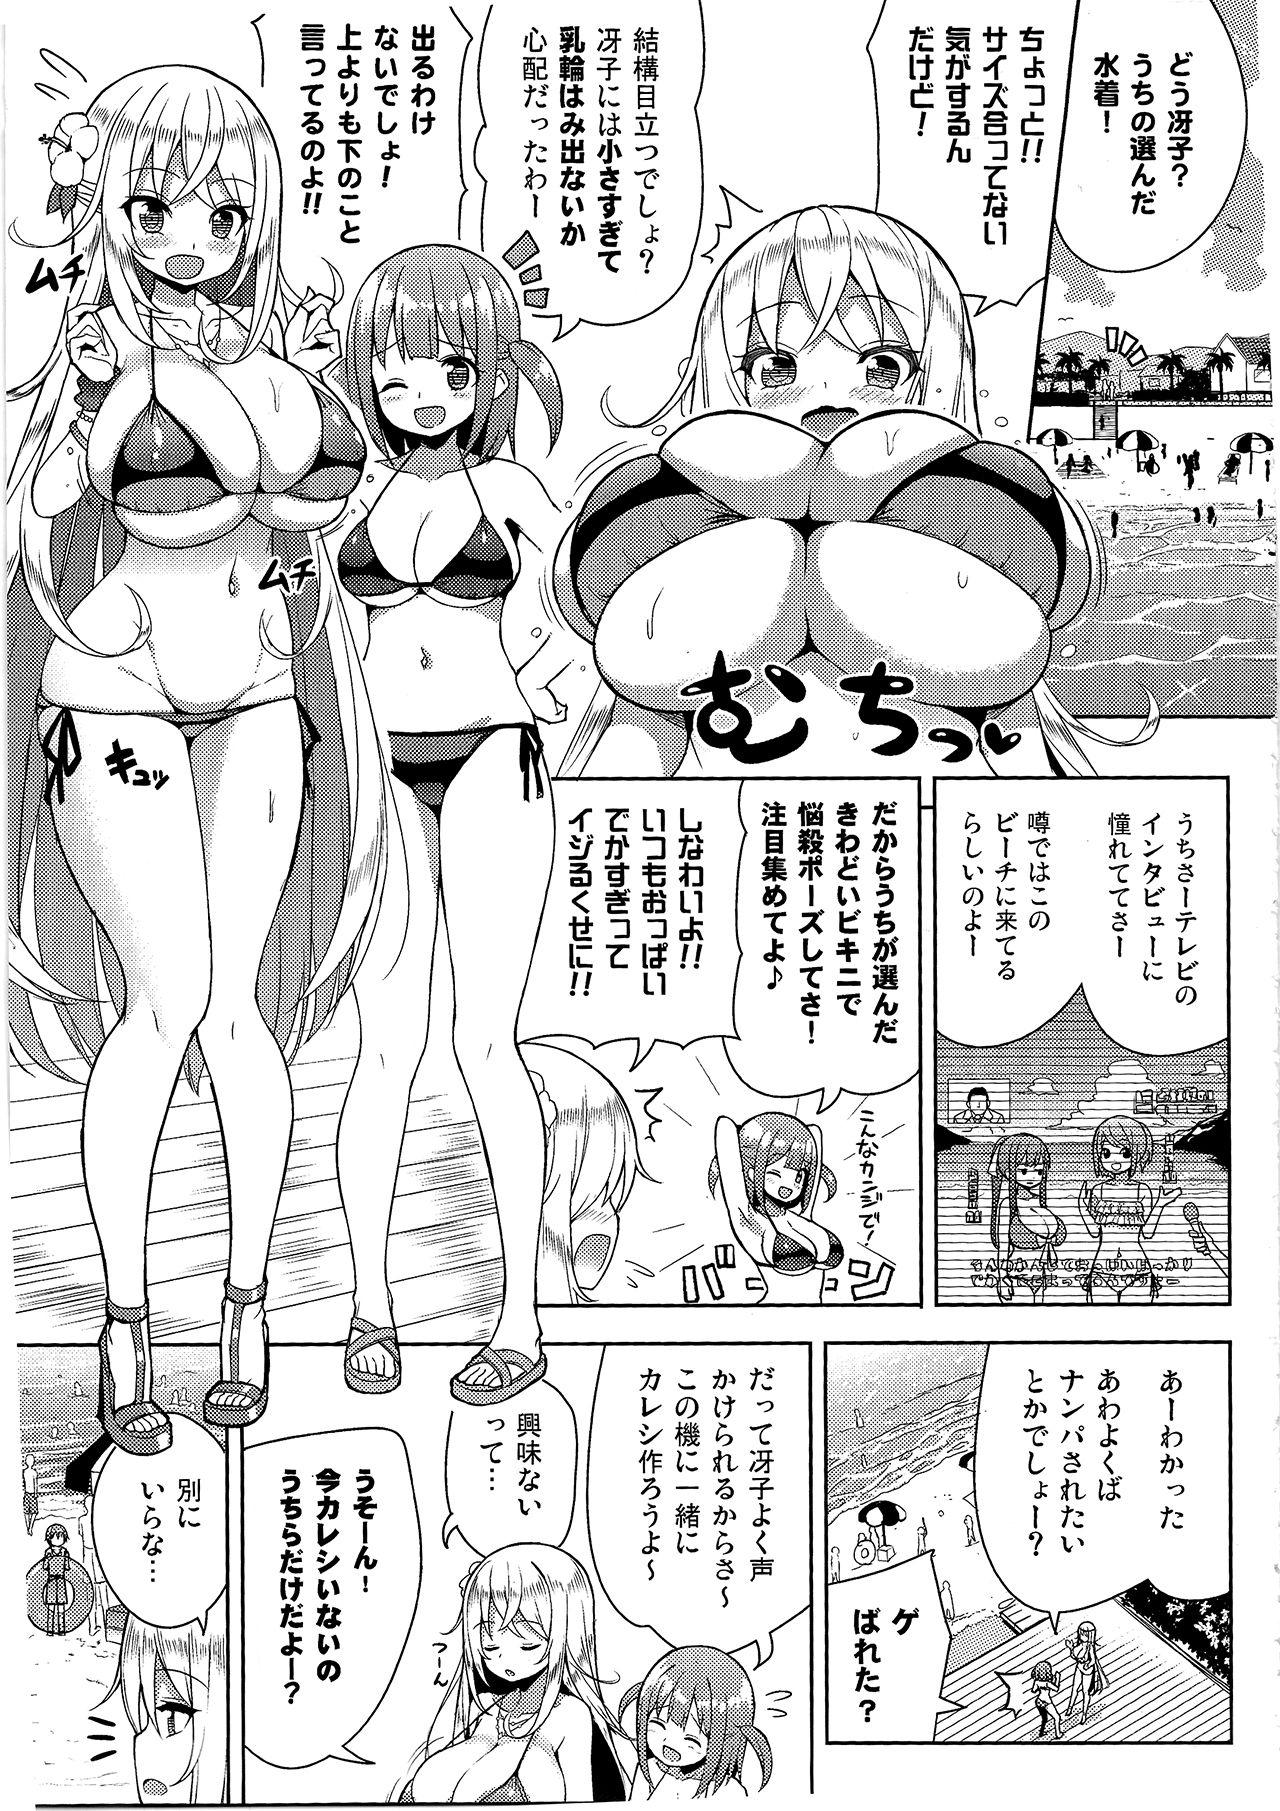 Sex Toy Ikenai Bikini no Onee-san 2 - Original Ecuador - Page 4